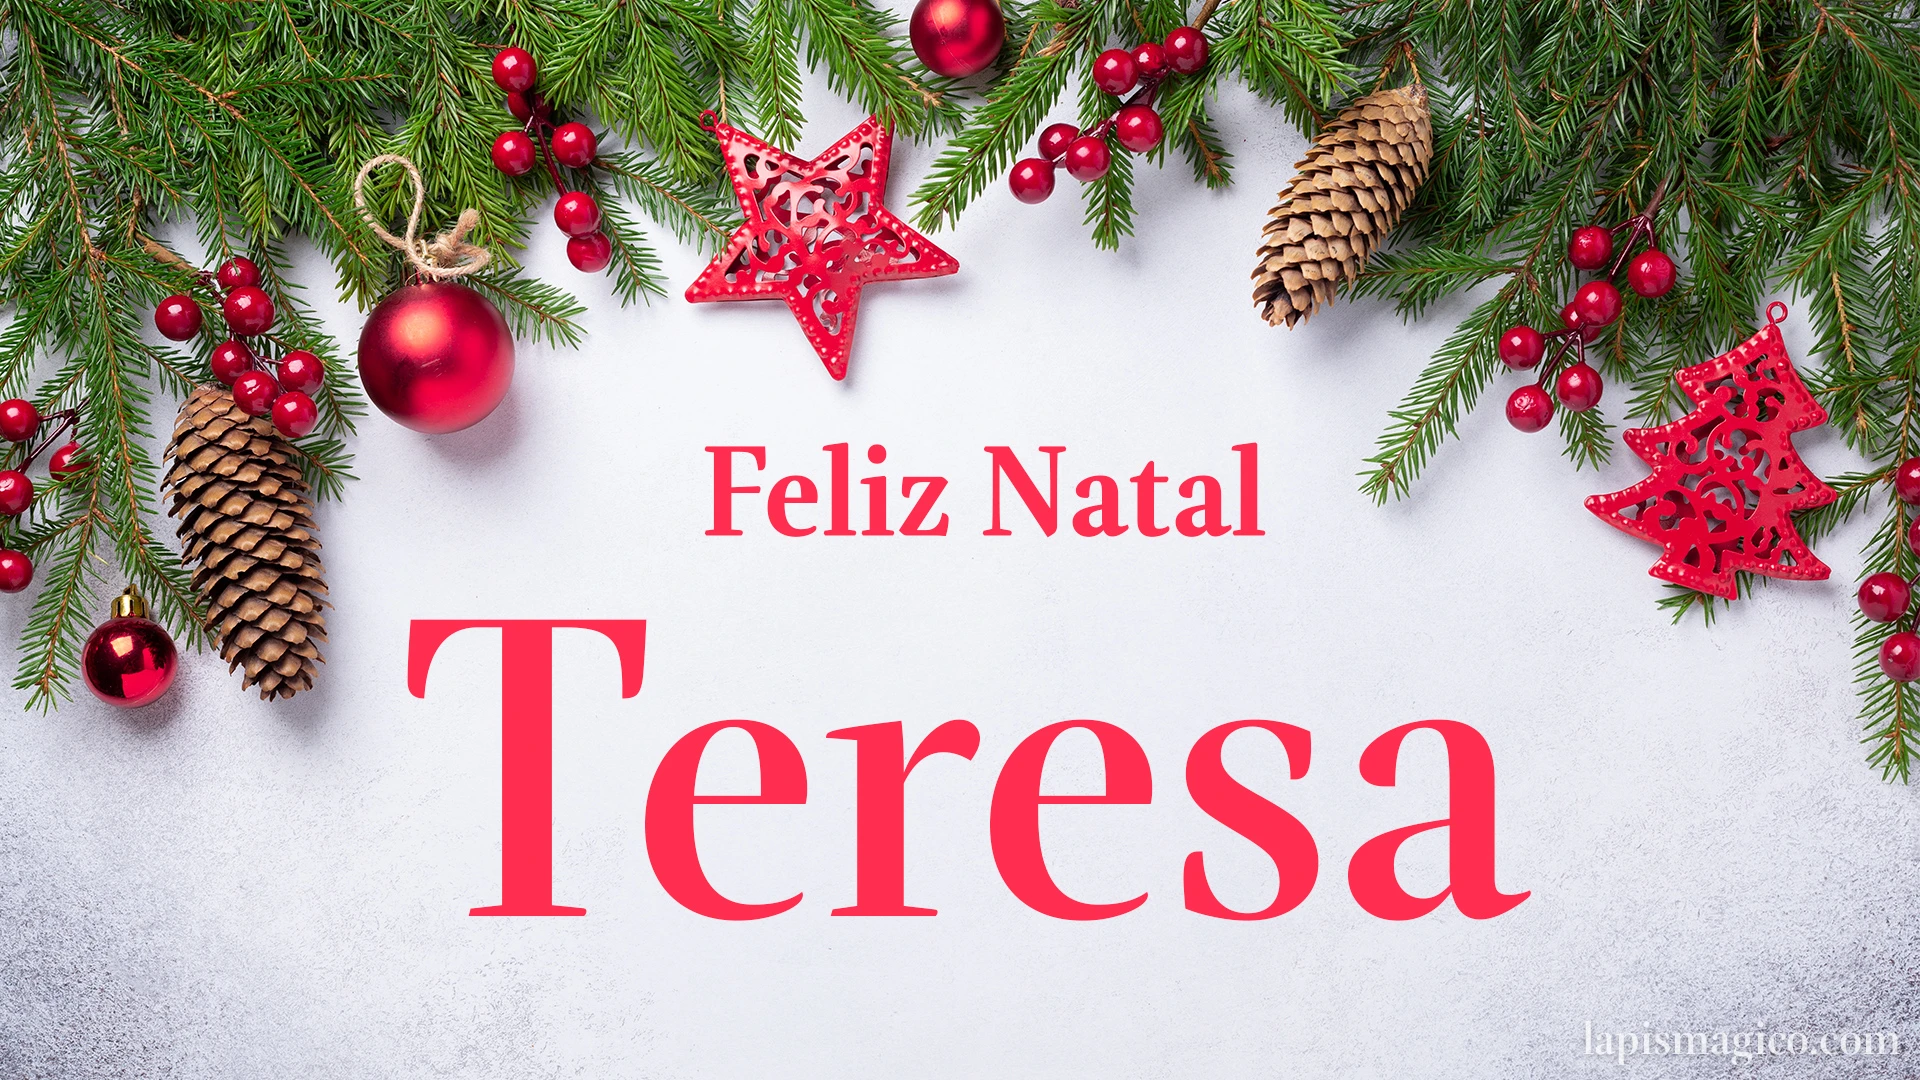 Oh Teresa, cinco postais de Feliz Natal Postal com o teu nome